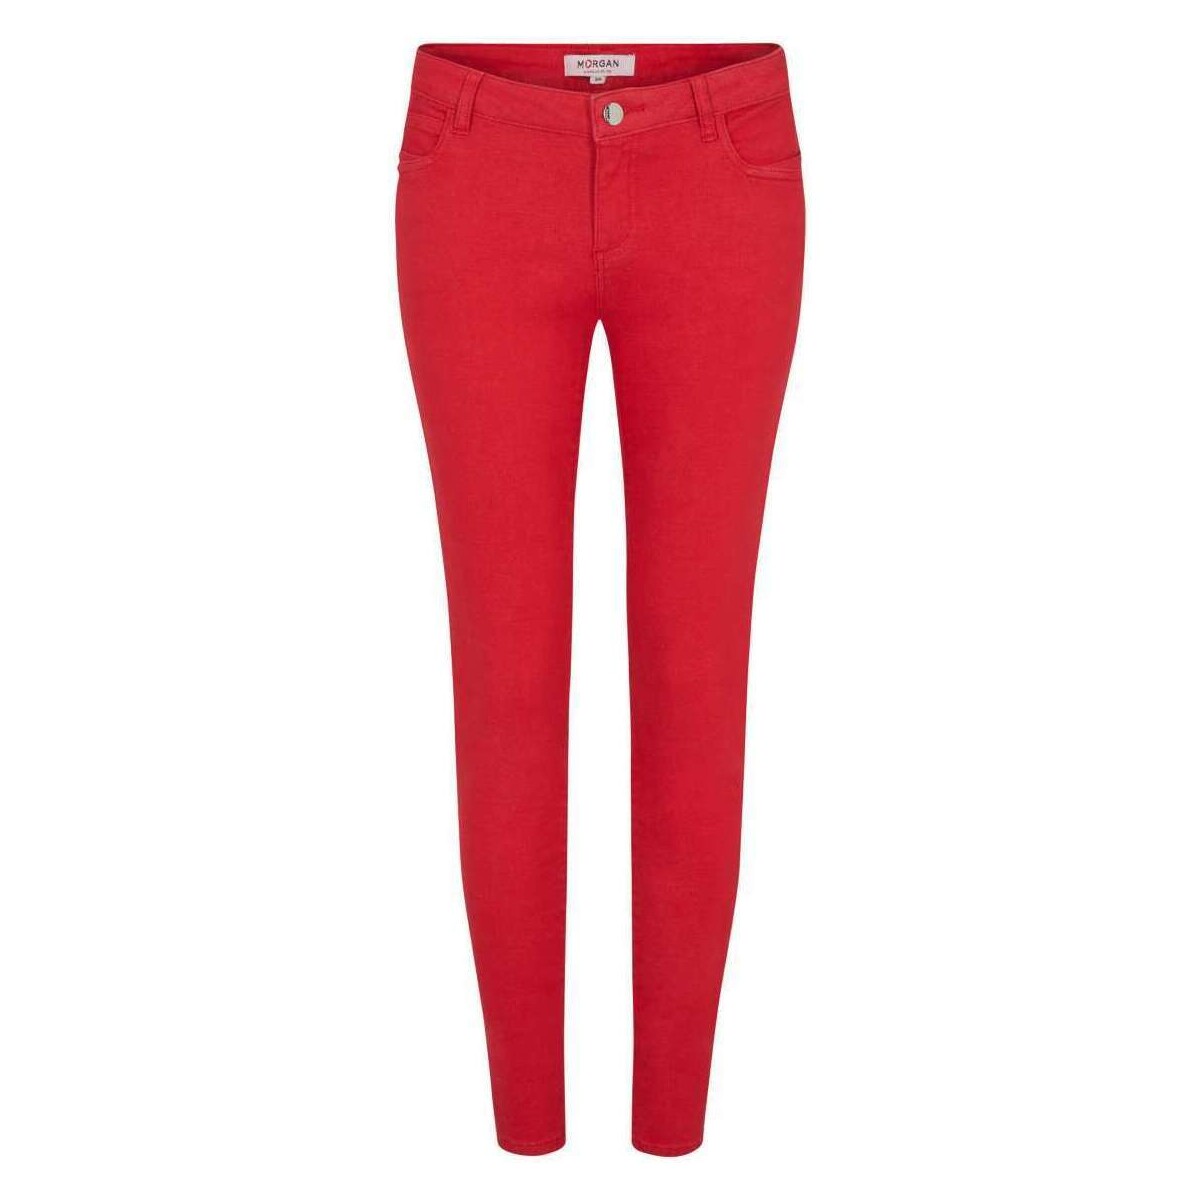 Vêtements Femme Pantalons 5 poches Morgan 161704VTPE24 Rouge